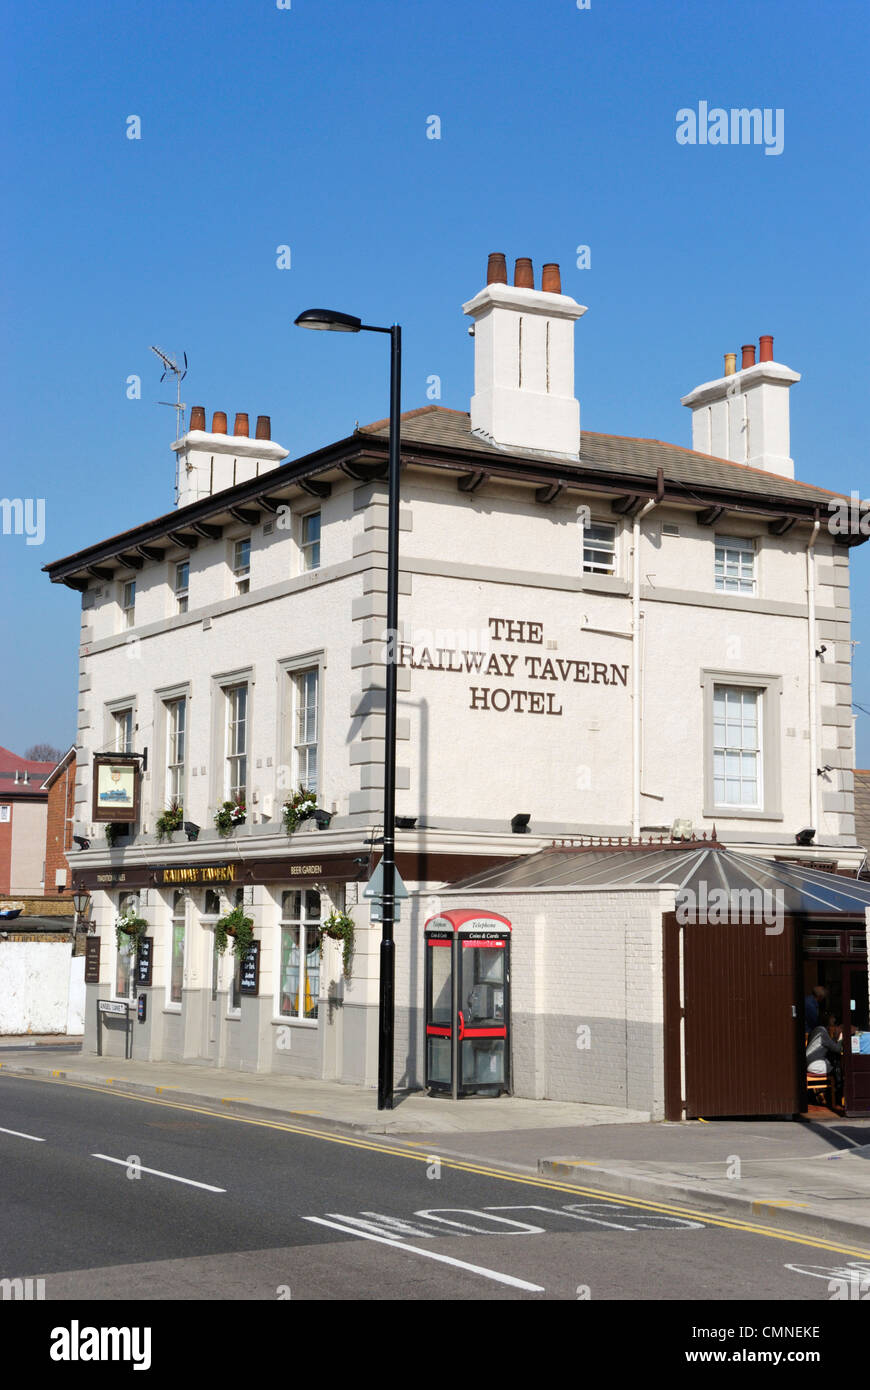 Le chemin de fer Tavern Hotel, Stratford, London, England Banque D'Images